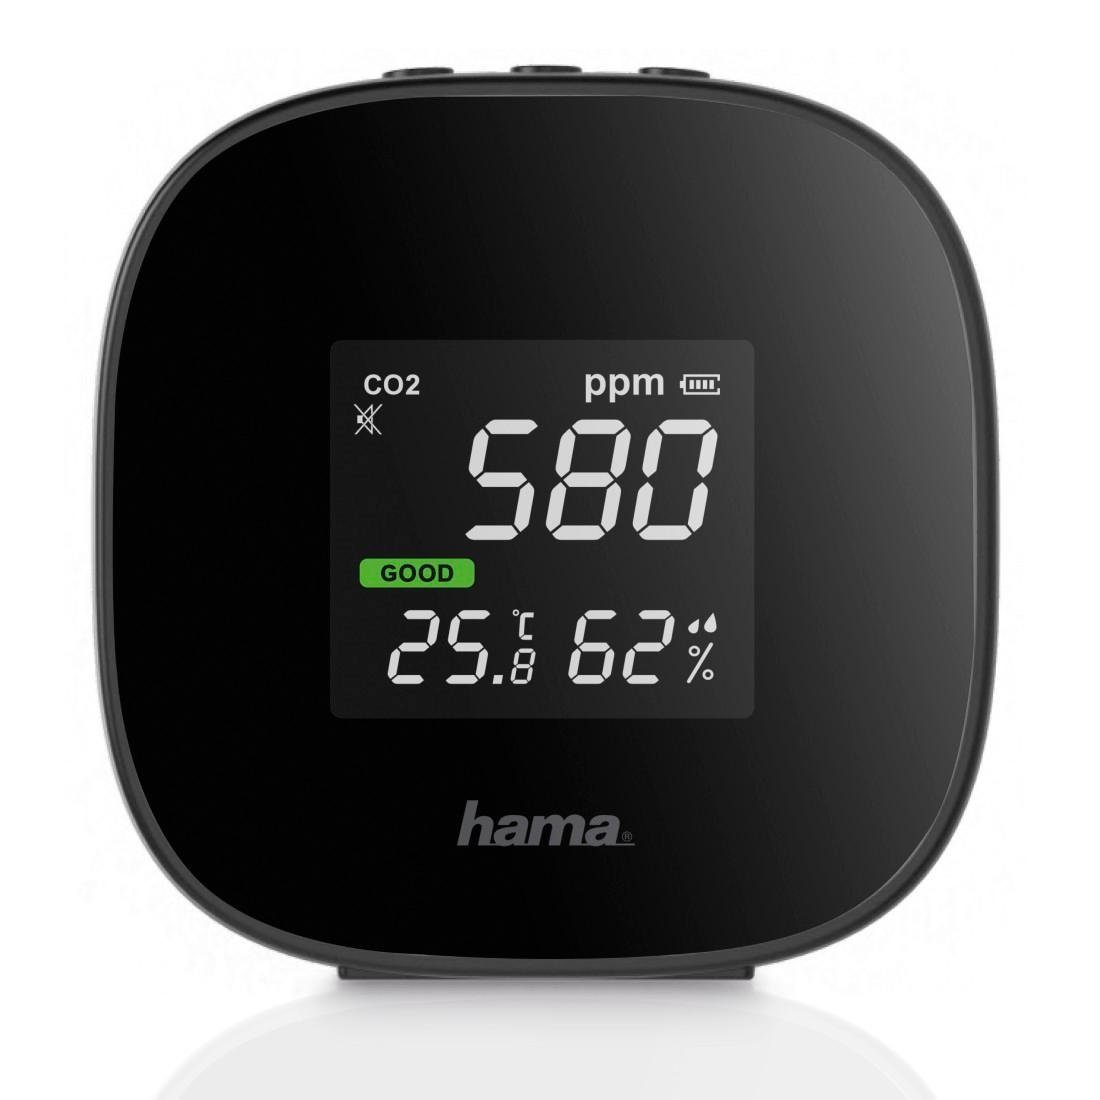 Hama Raumluft-Qualitätssensor CO2 Messgerät m. Ampel Temperatur/ Luftqualität/Luftfeuchtigkeit, Luftfeuchtigkeitsmesser Messer